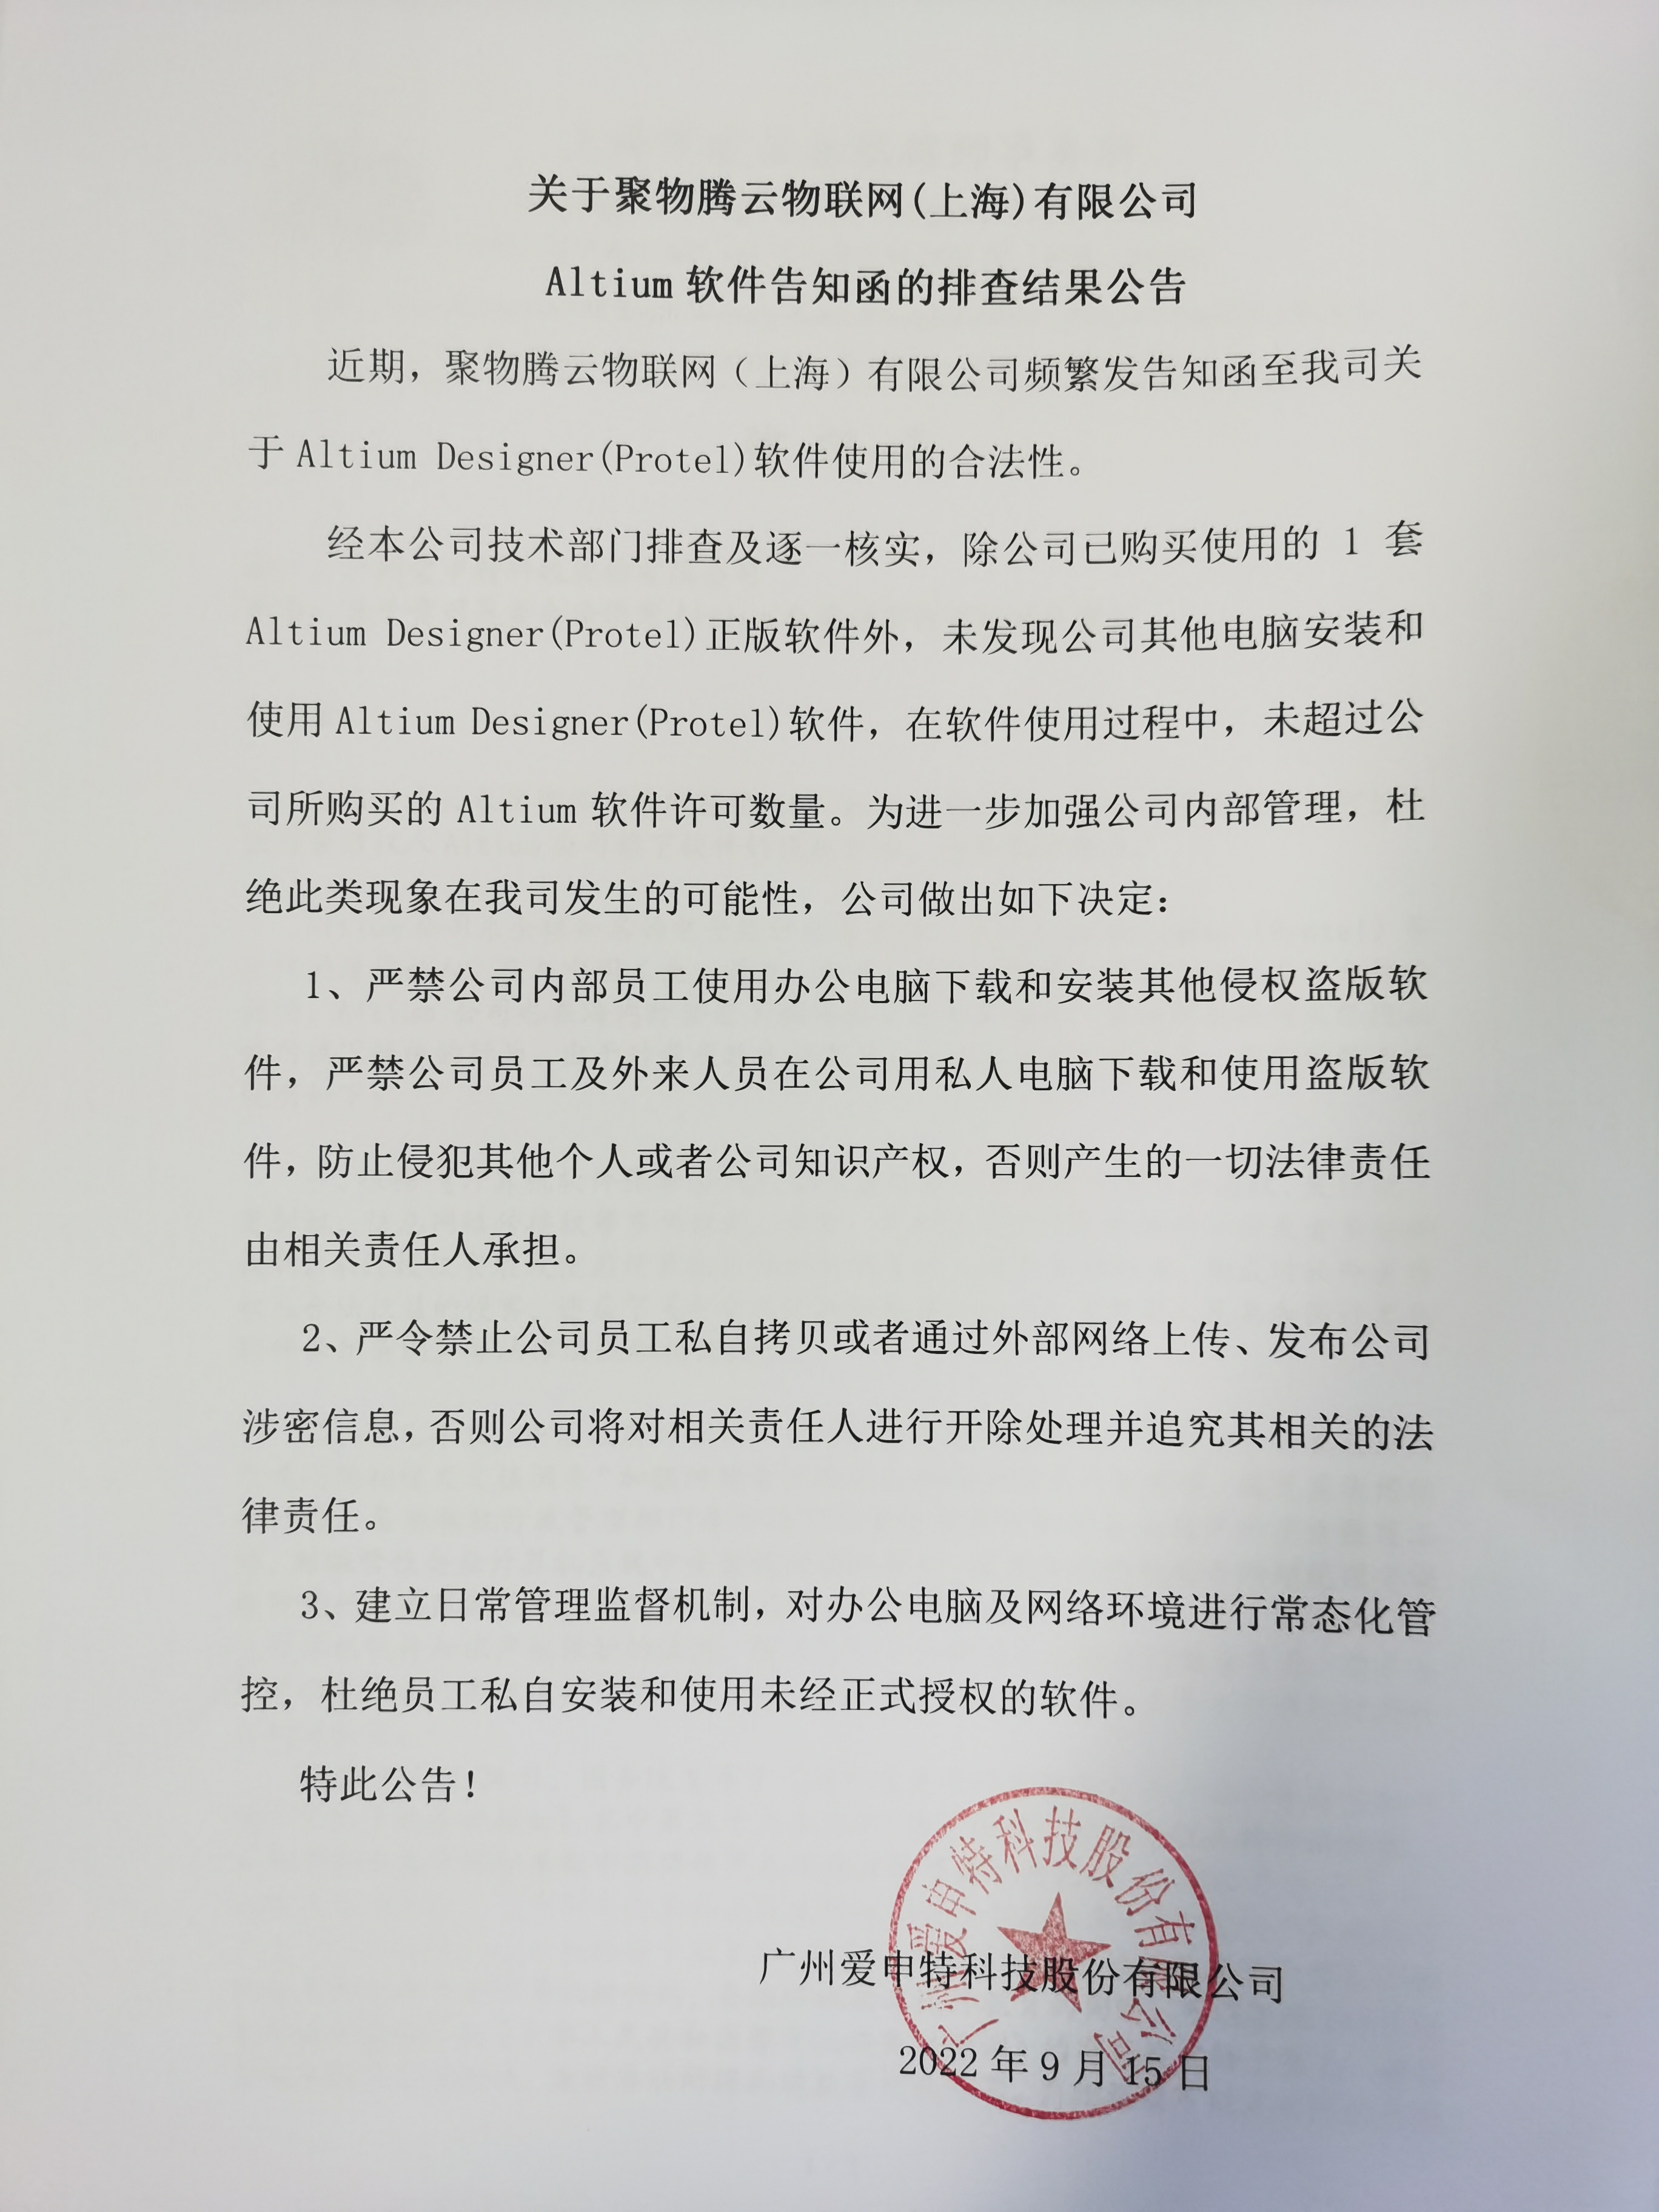 关于聚物腾云物联网(上海)有限公司Altium软件告知函的排查结果公告